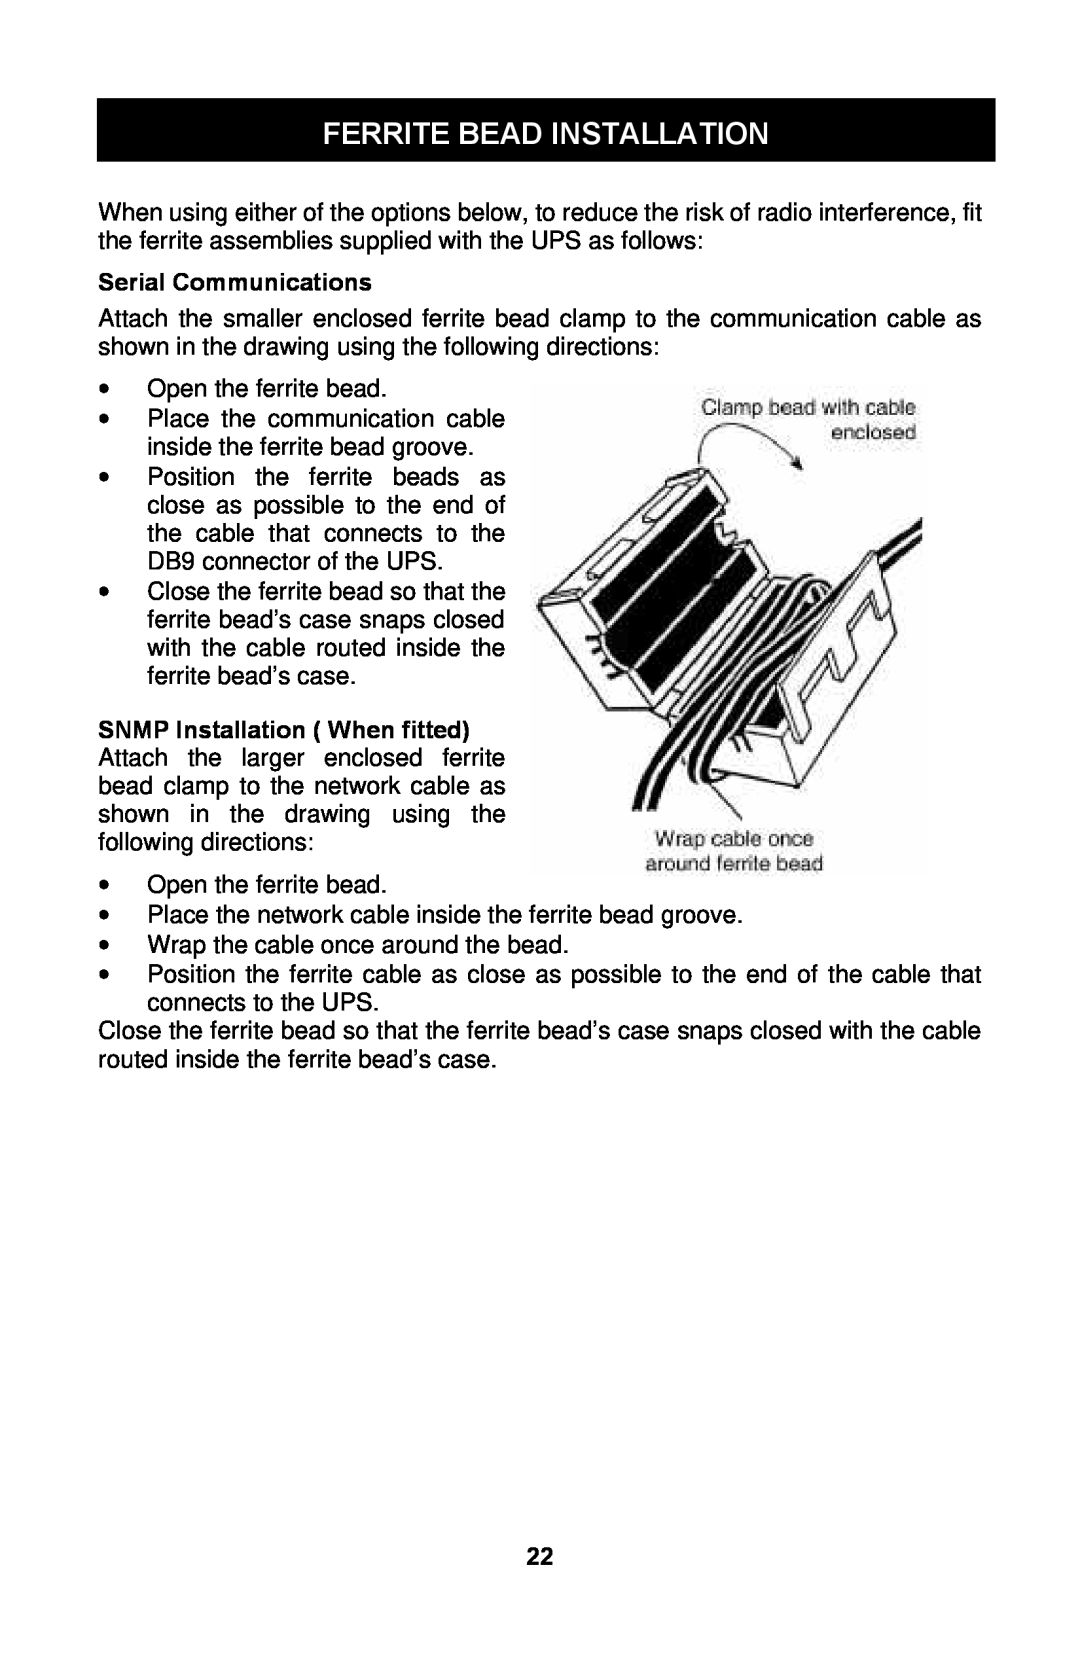 Liebert GXTTM user manual Ferrite Bead Installation, Serial Communications 